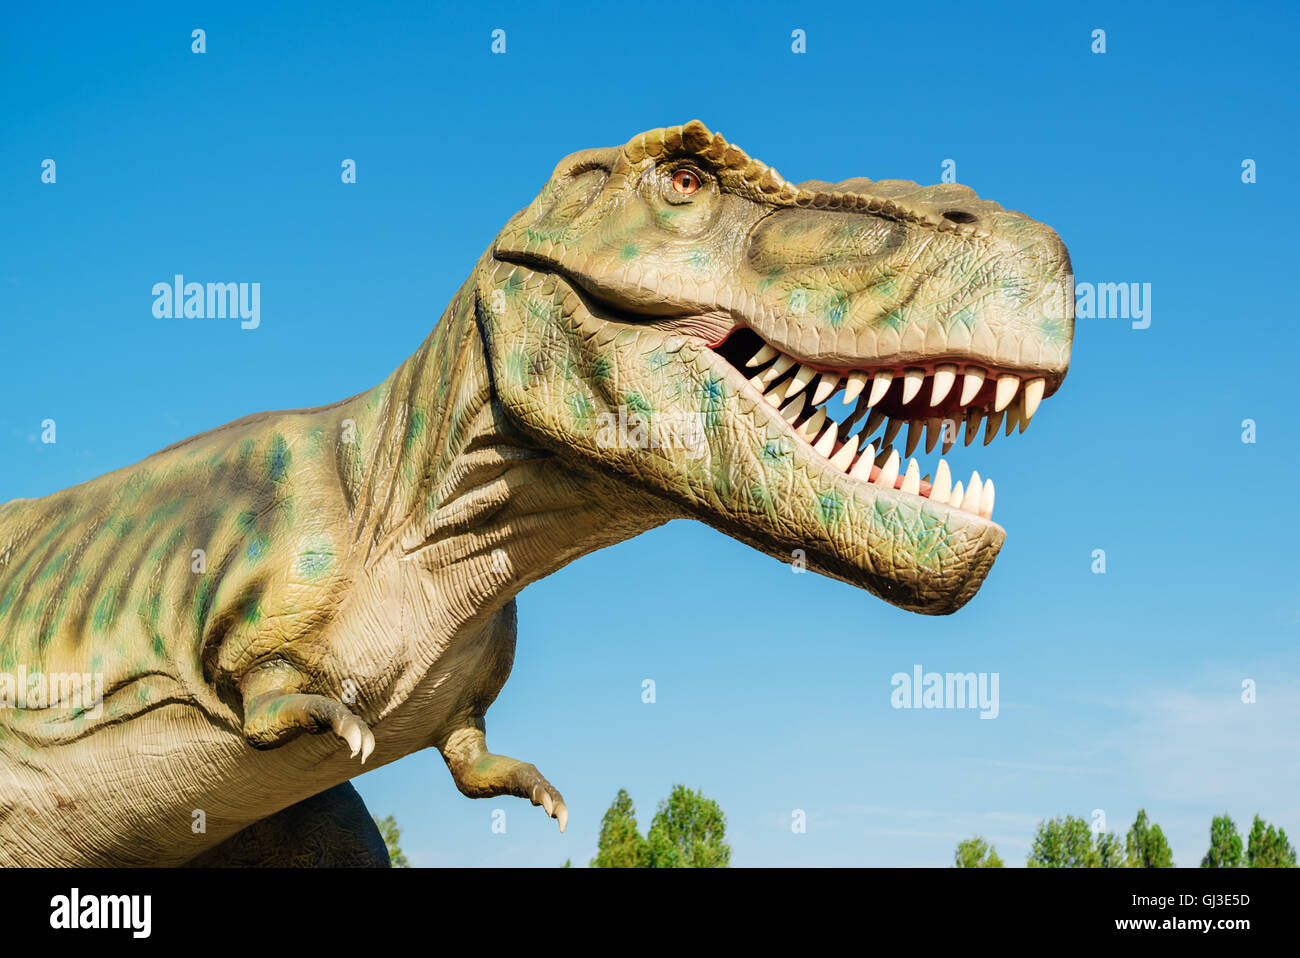 NOVI SAD SERBIA - Agosto 7, 2016: Tirannosauro vita dimensioni modello di animale preistorico di intrattenimento a tema Dino Park. Foto Stock